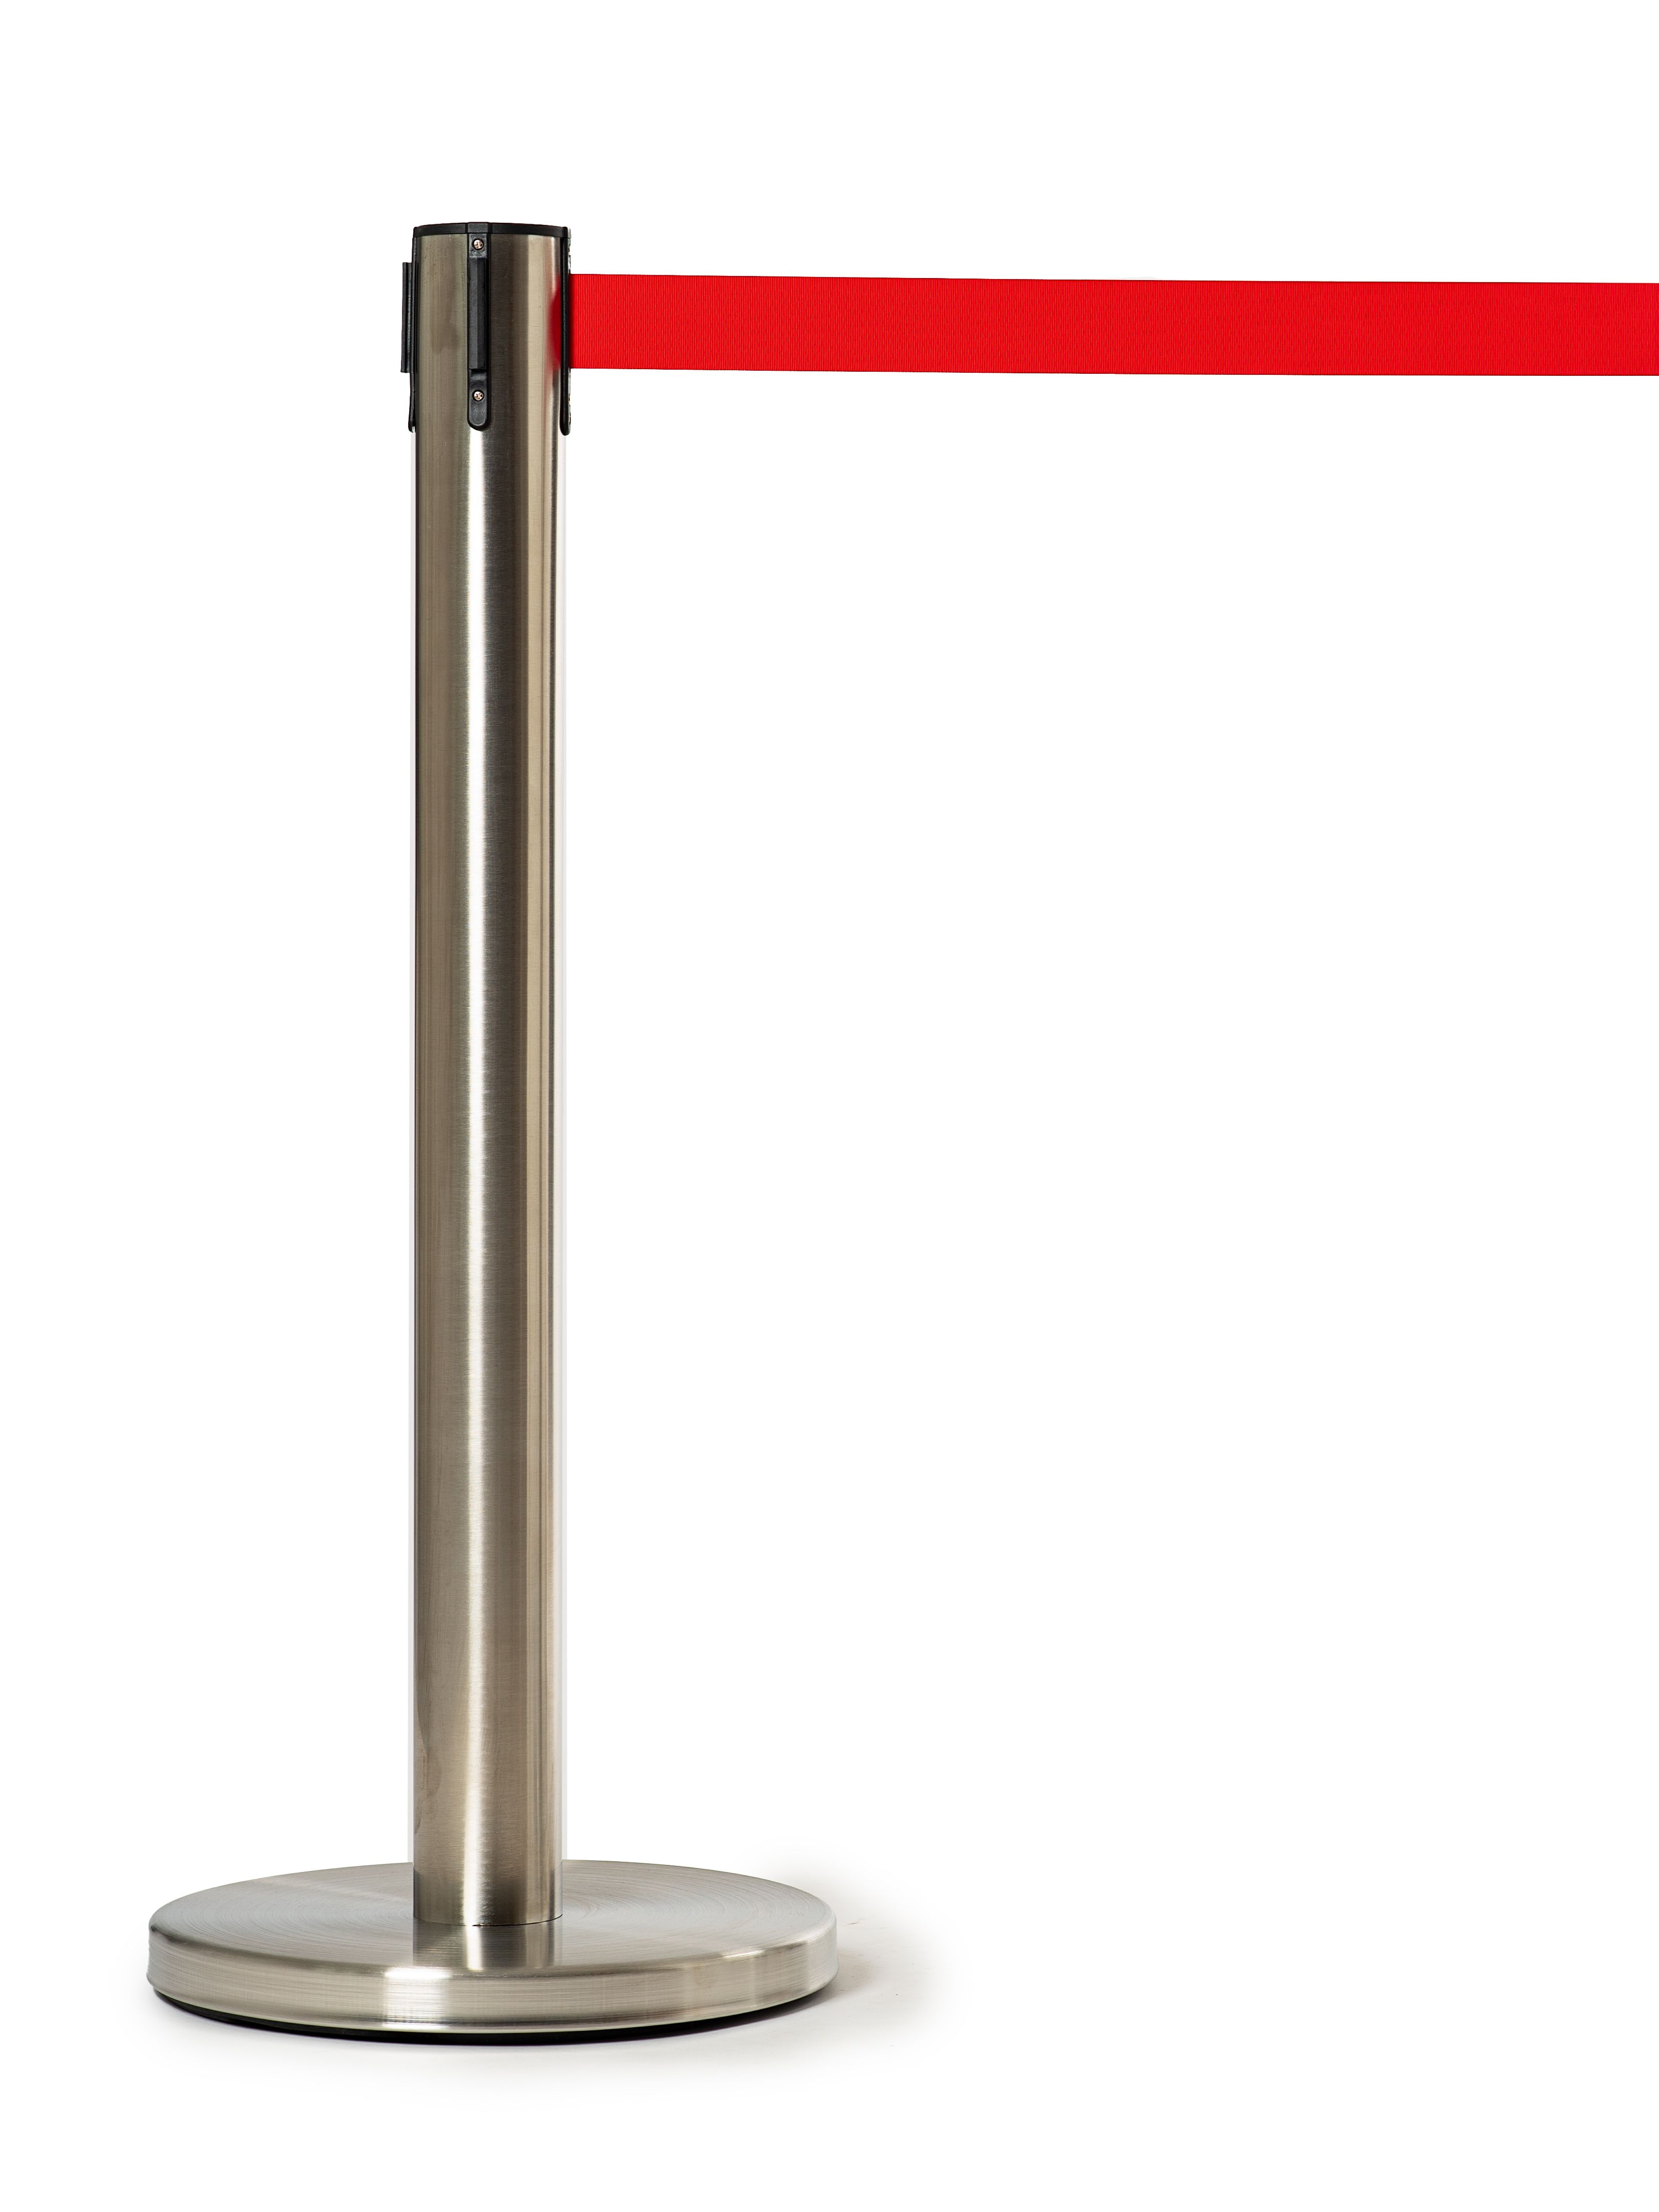 Мобильная стойка с красной лентой 5 метров (плавный ход) мобильная стойка с сигнальной лентой 5 метров